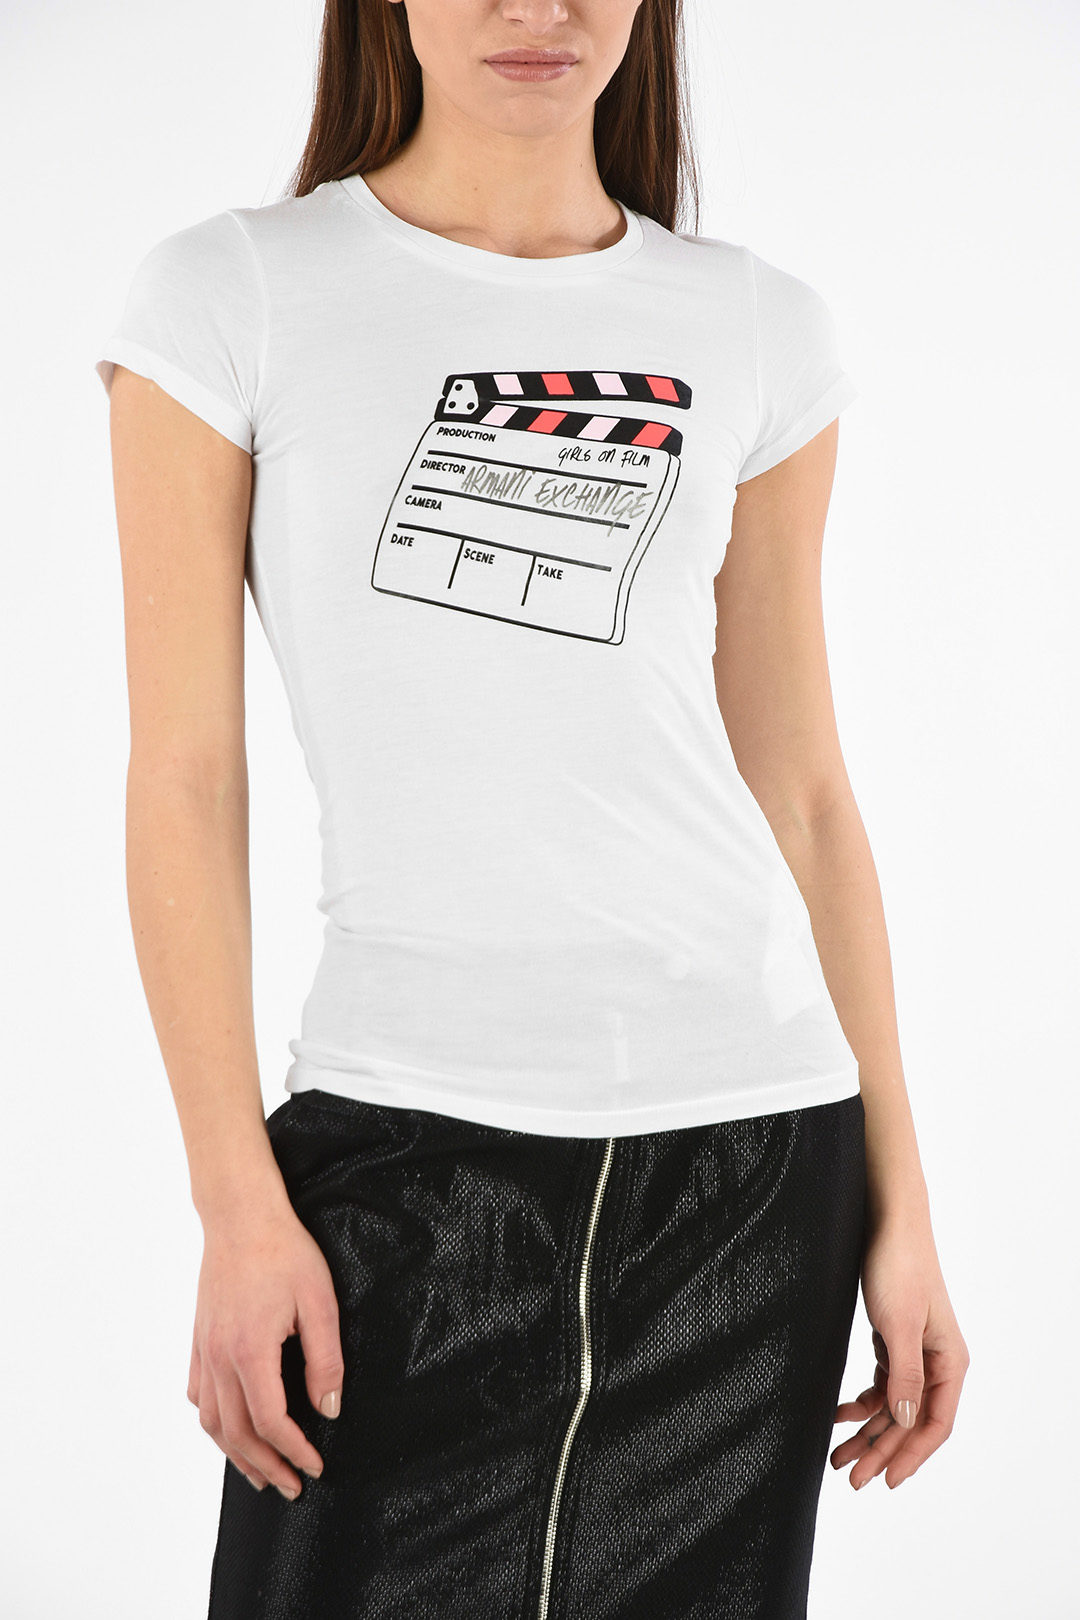 Armani ARMANI EXCHANGE Print T-shirt women - Glamood Outlet